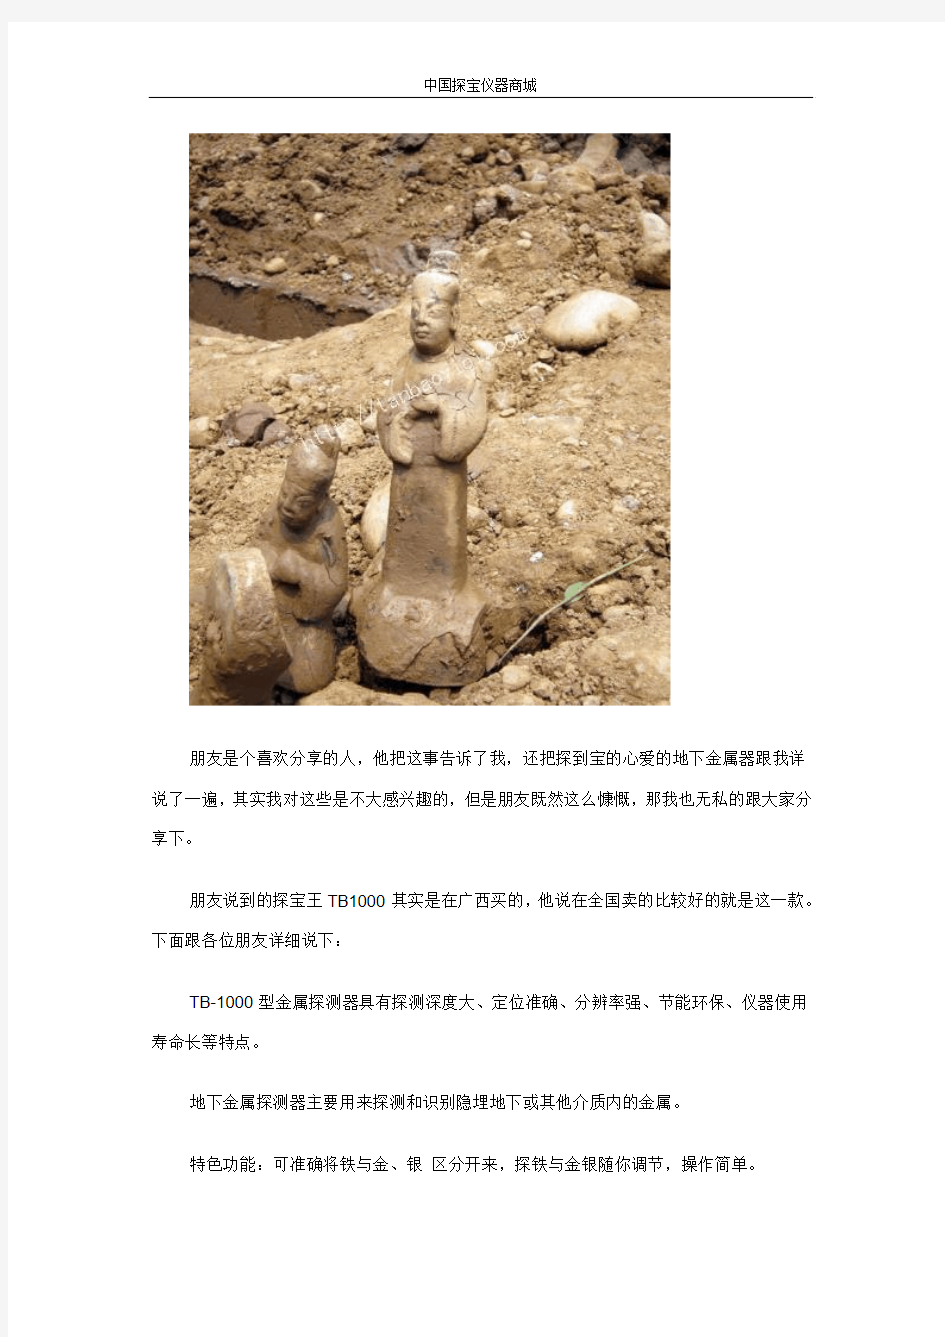 最火地下金属探测器探测出宋代古墓重要文物